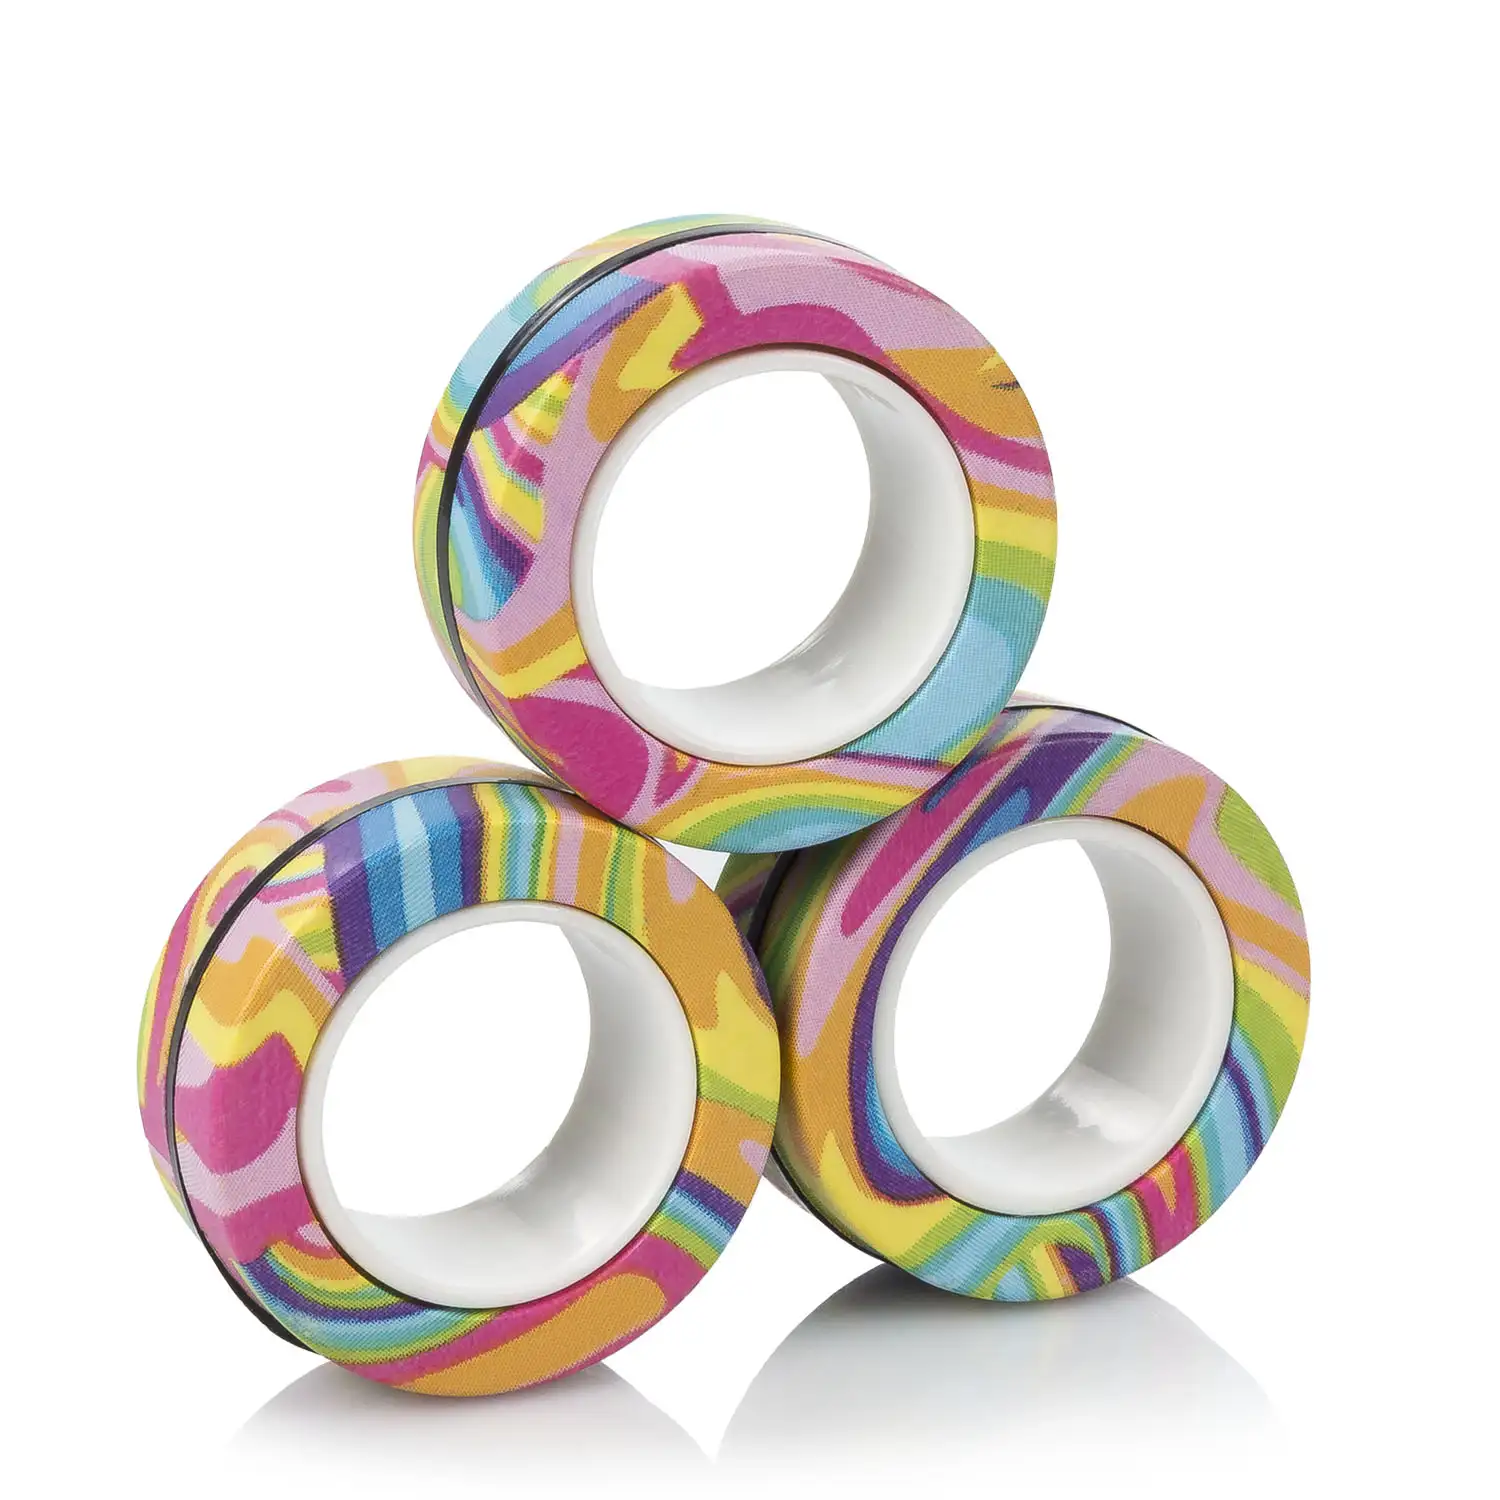 Magnetic Fidget Rings, anillos magnéticos de diseño exclusivo. Juguete antiestrés, ansiedad, concentración.